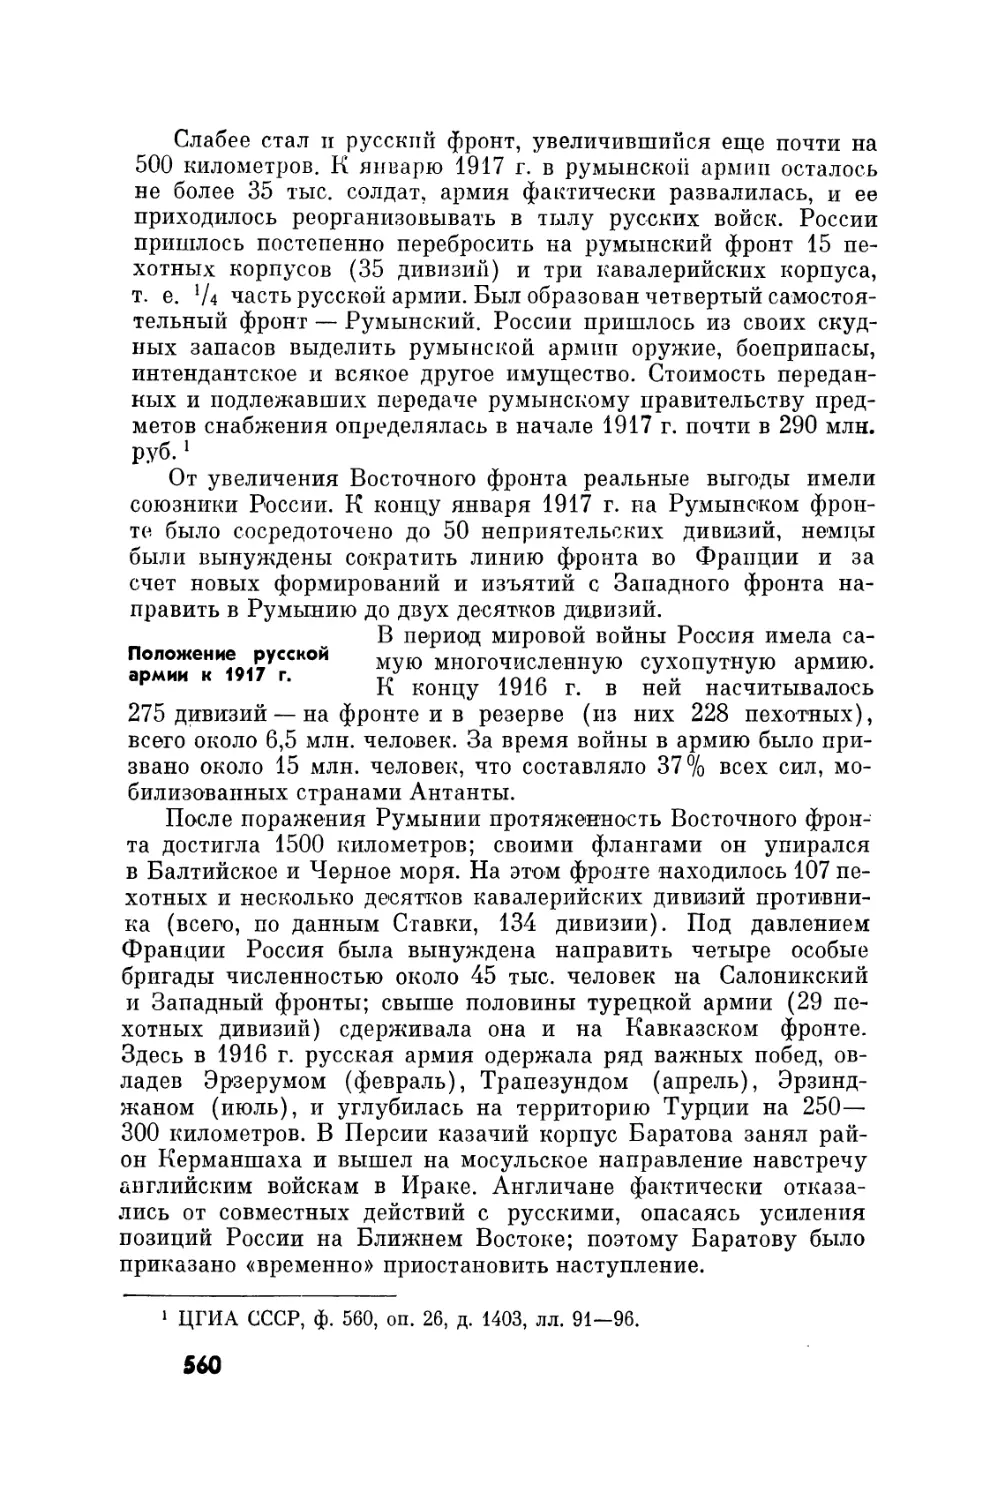 Положение русской армии к 1917 г.